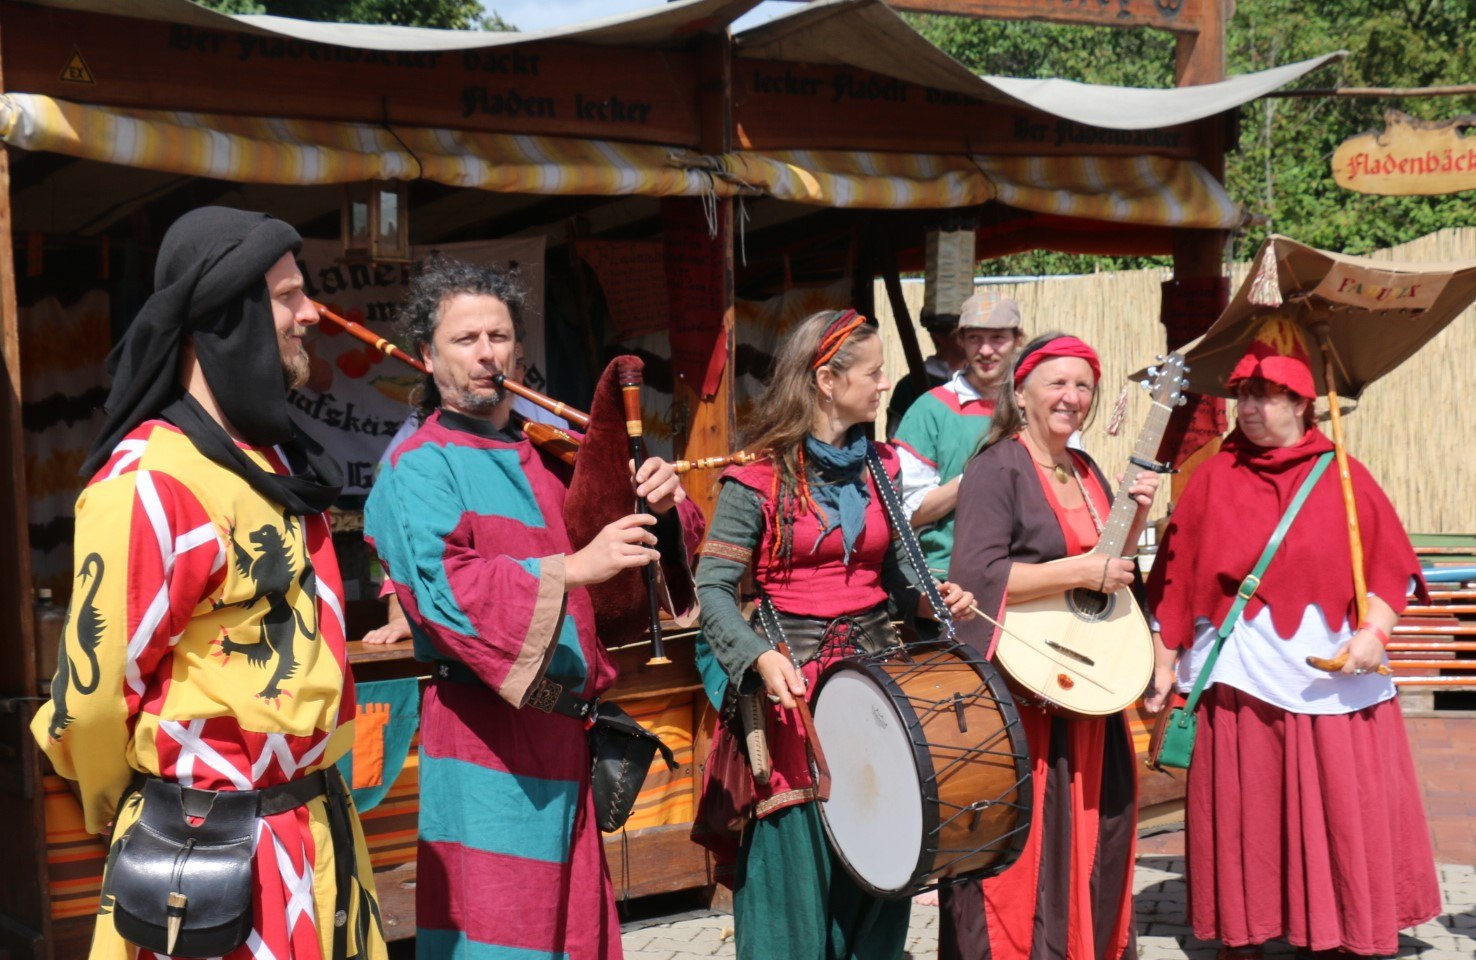 Mittelalterliche Musik begleitet das zweitägige Markttreiben., © Verein Olle Bäckeräi e.V.